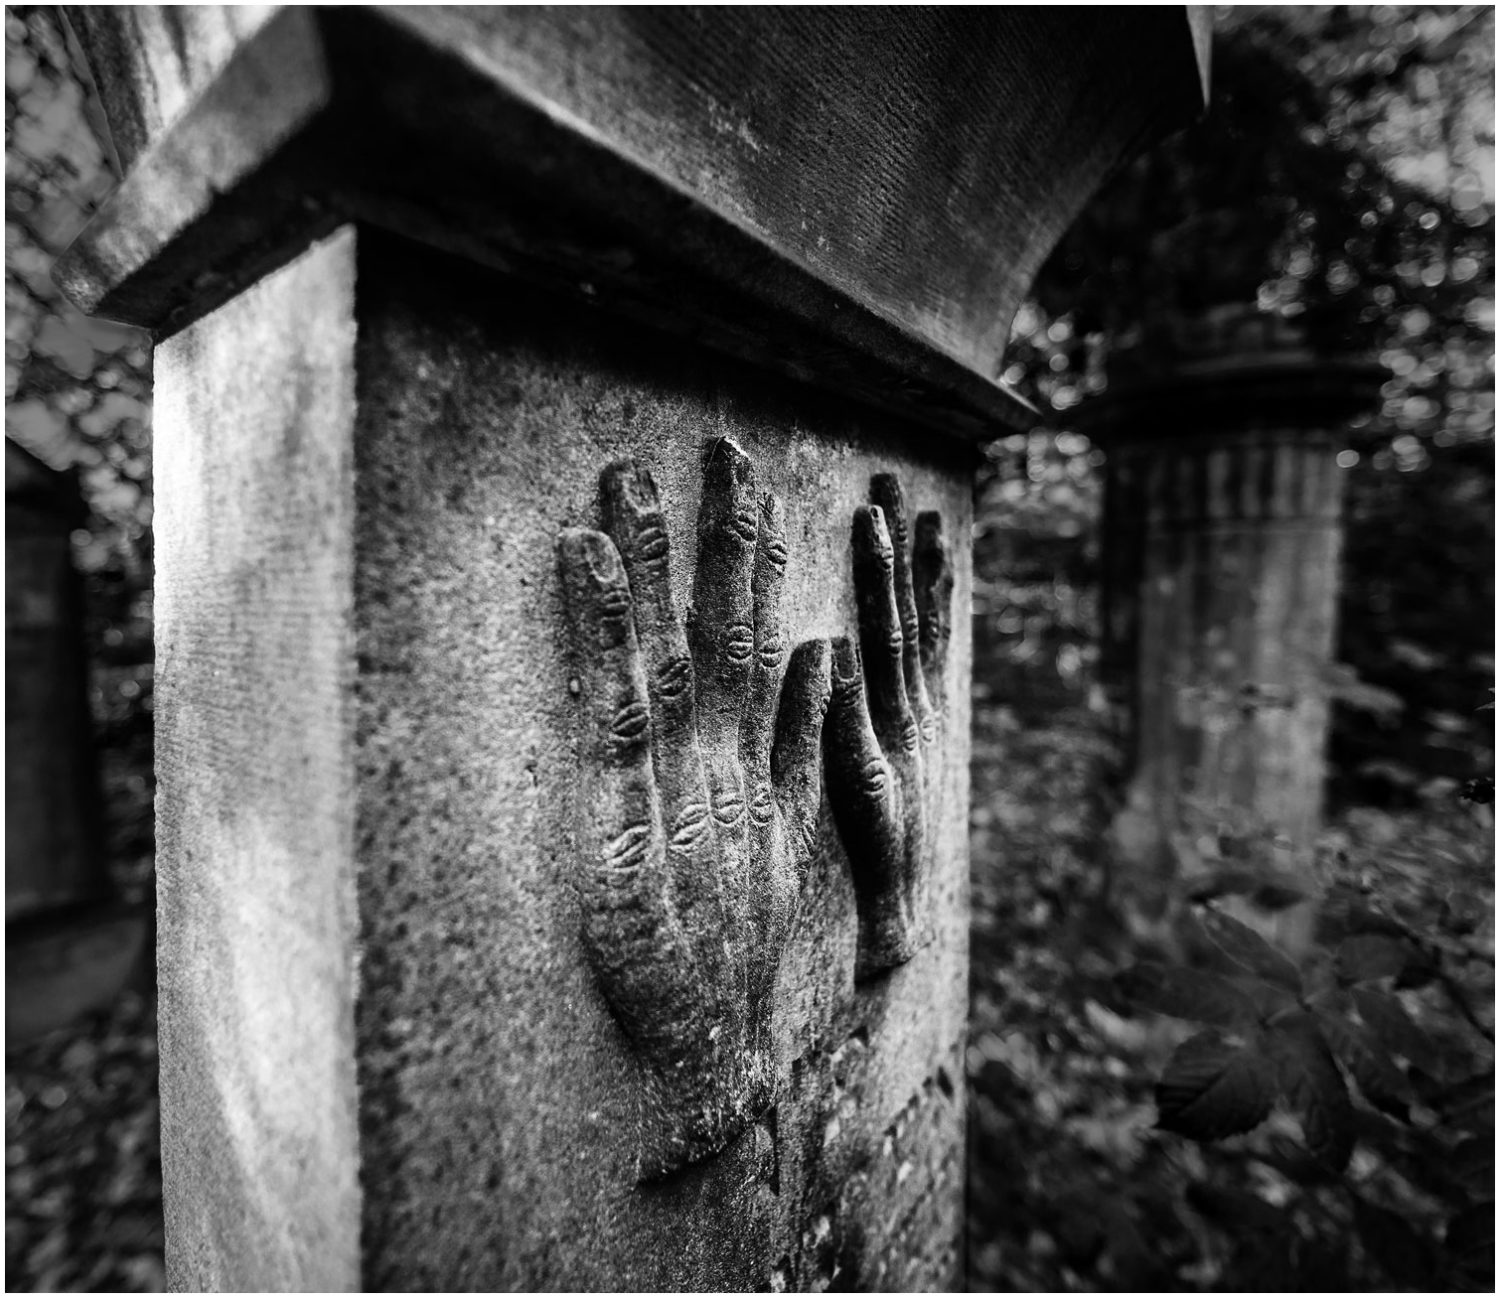 Schwarz-Weiß-Fotografie: Jüdischer Grabstein, in den zwei Hände eingemeißelt sind